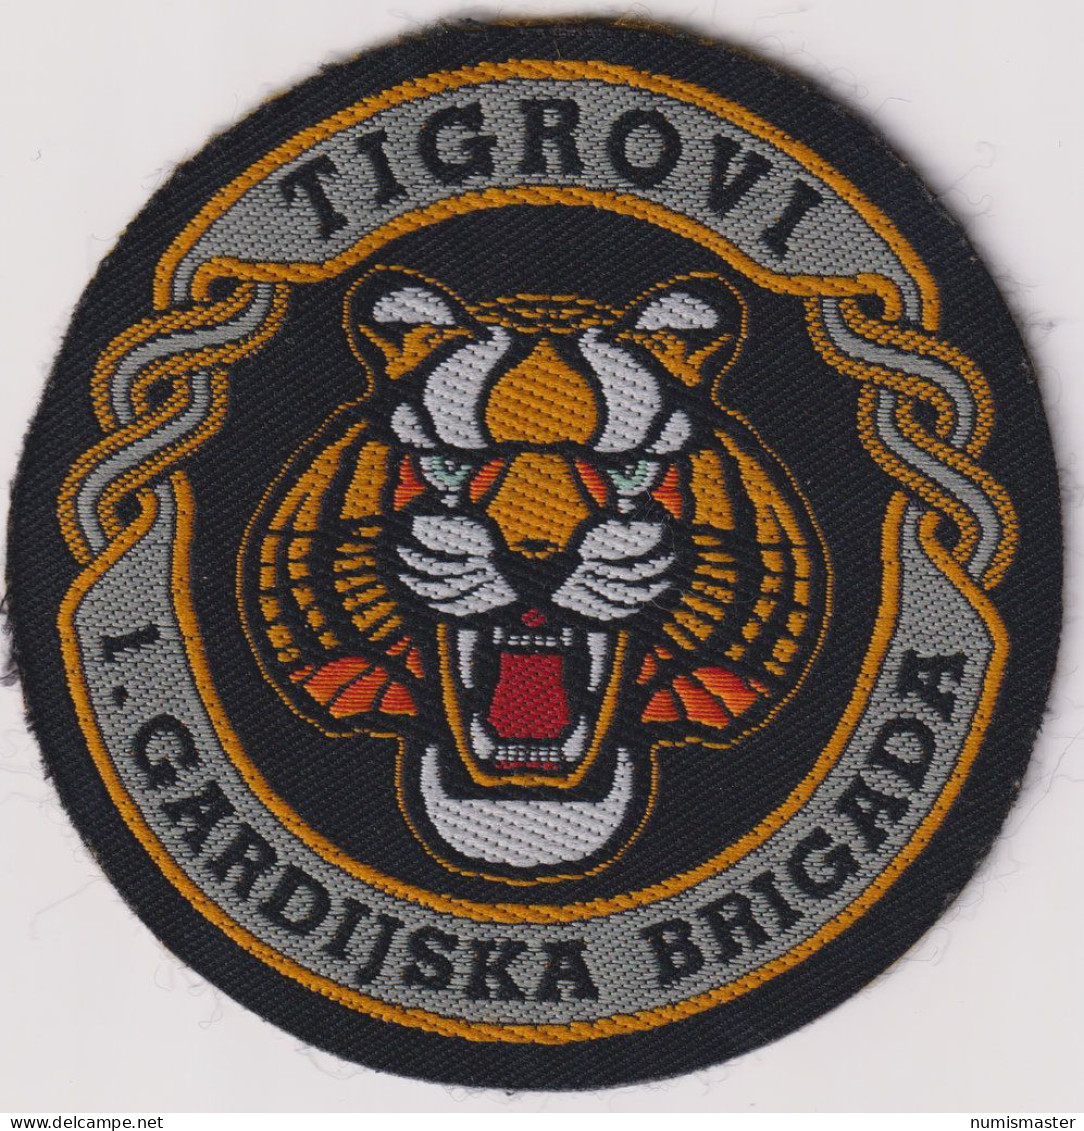 CROATIA ARMY 1st GUARD BRIGADE "TIGERS" PATCH - Ecussons Tissu